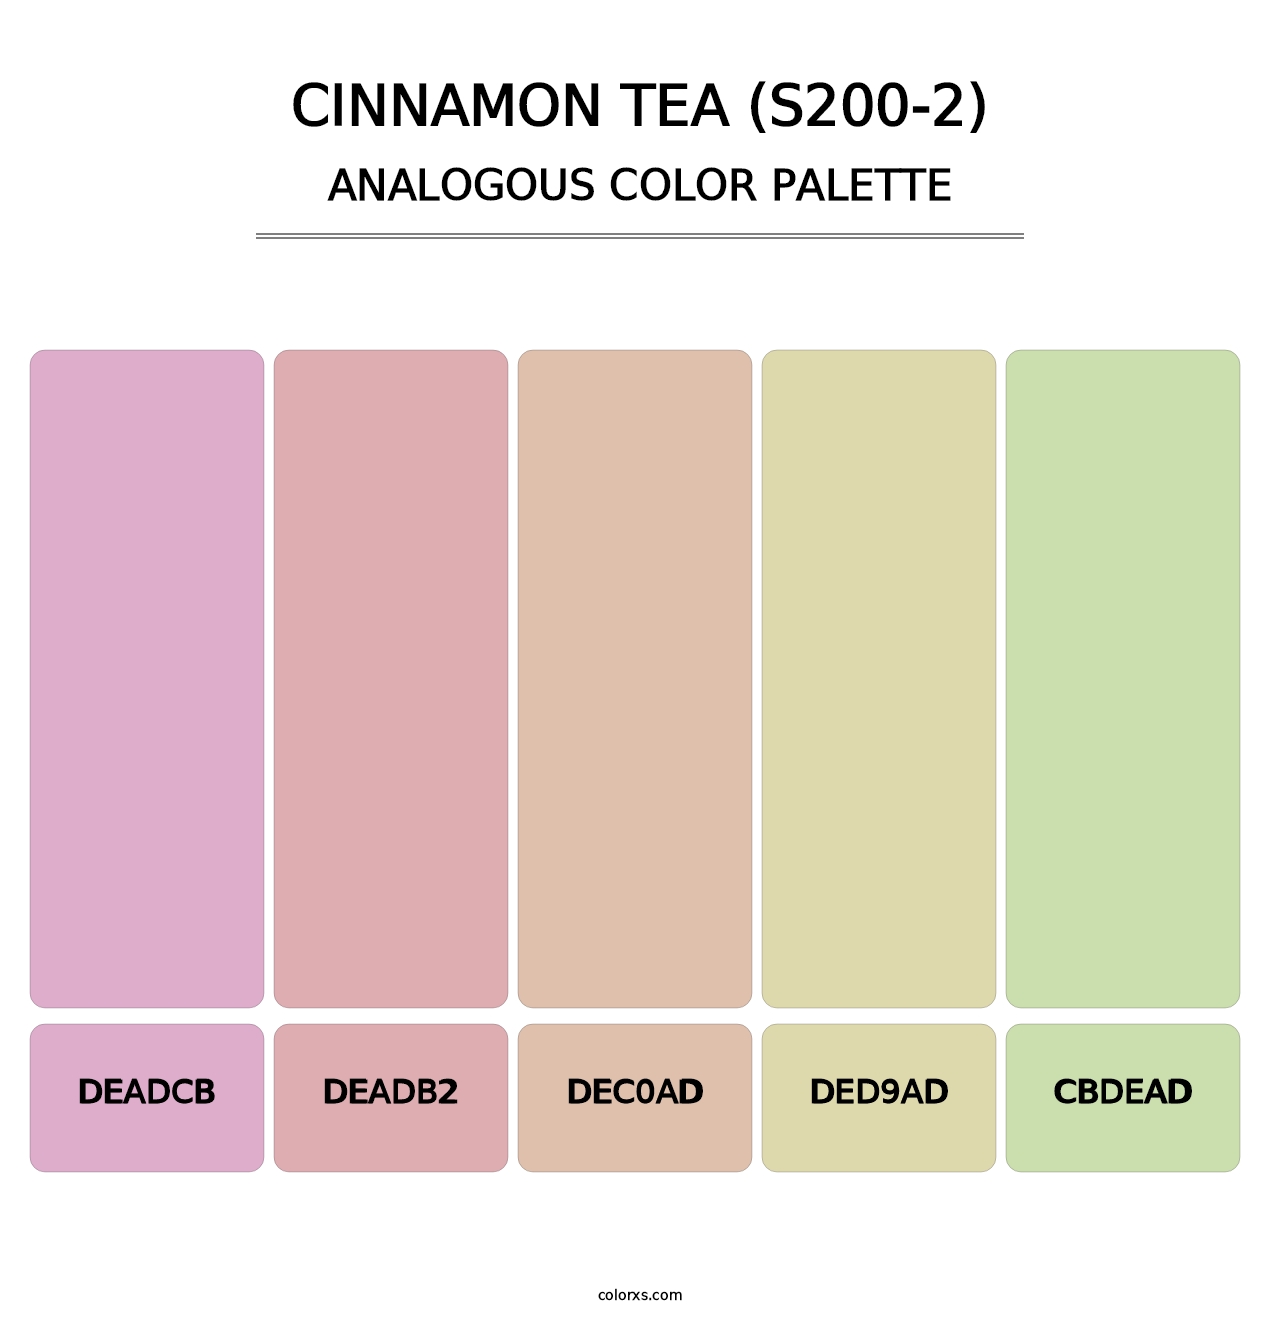 Cinnamon Tea (S200-2) - Analogous Color Palette